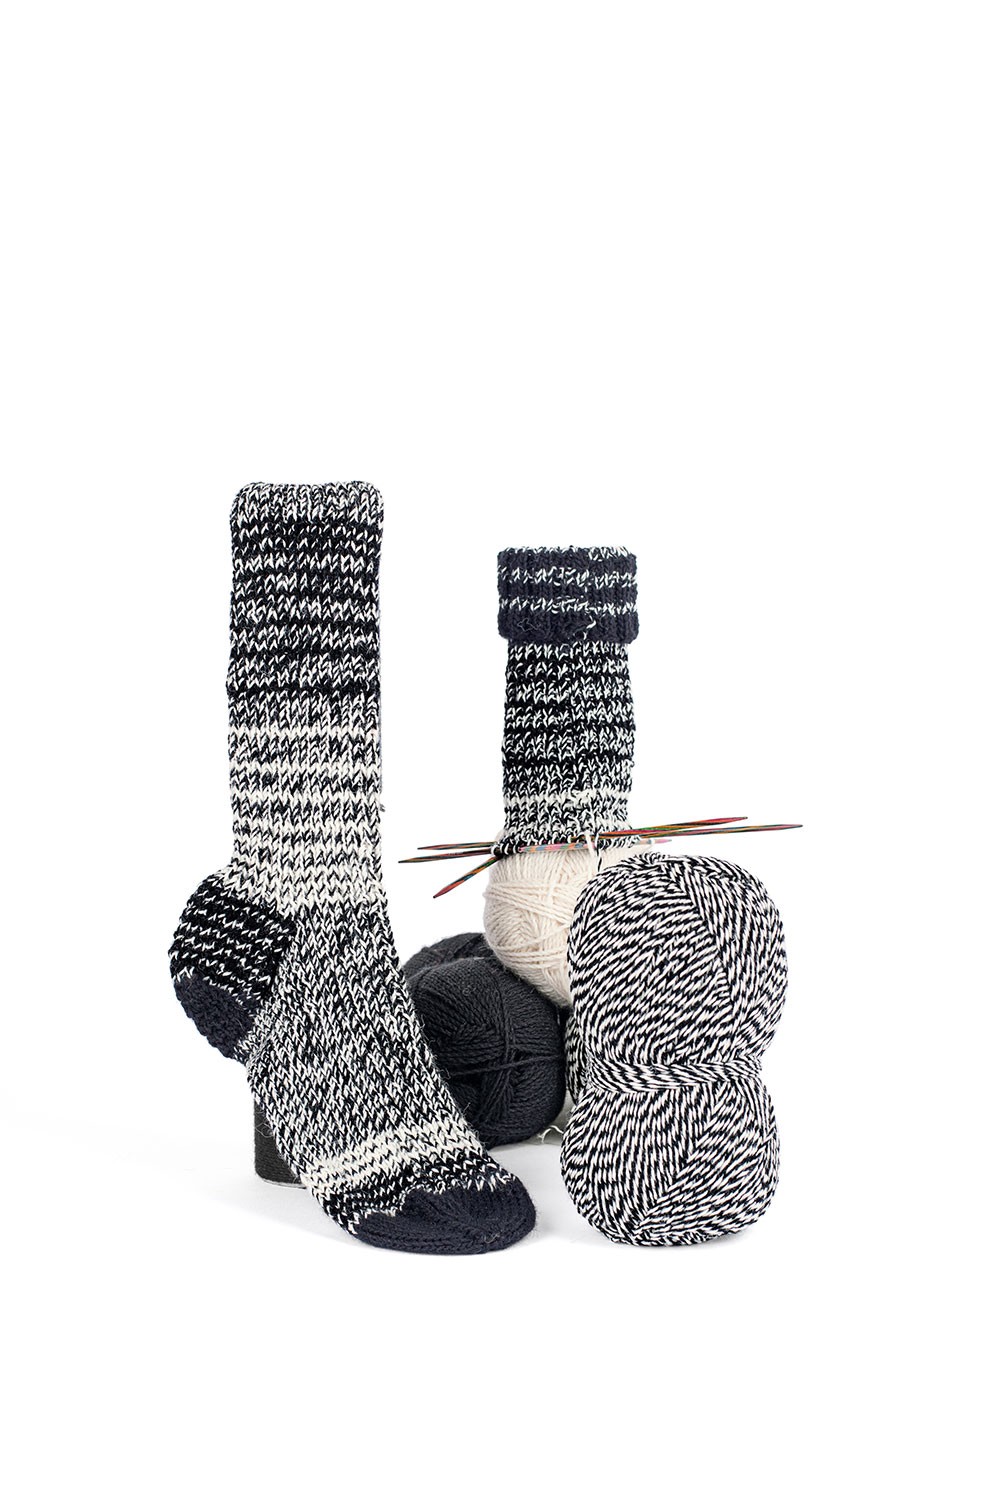 Wolle | naturweiß/schwarz fein Melange | | Sockenwolle Finkhof Wollgarne Sockenwolle |